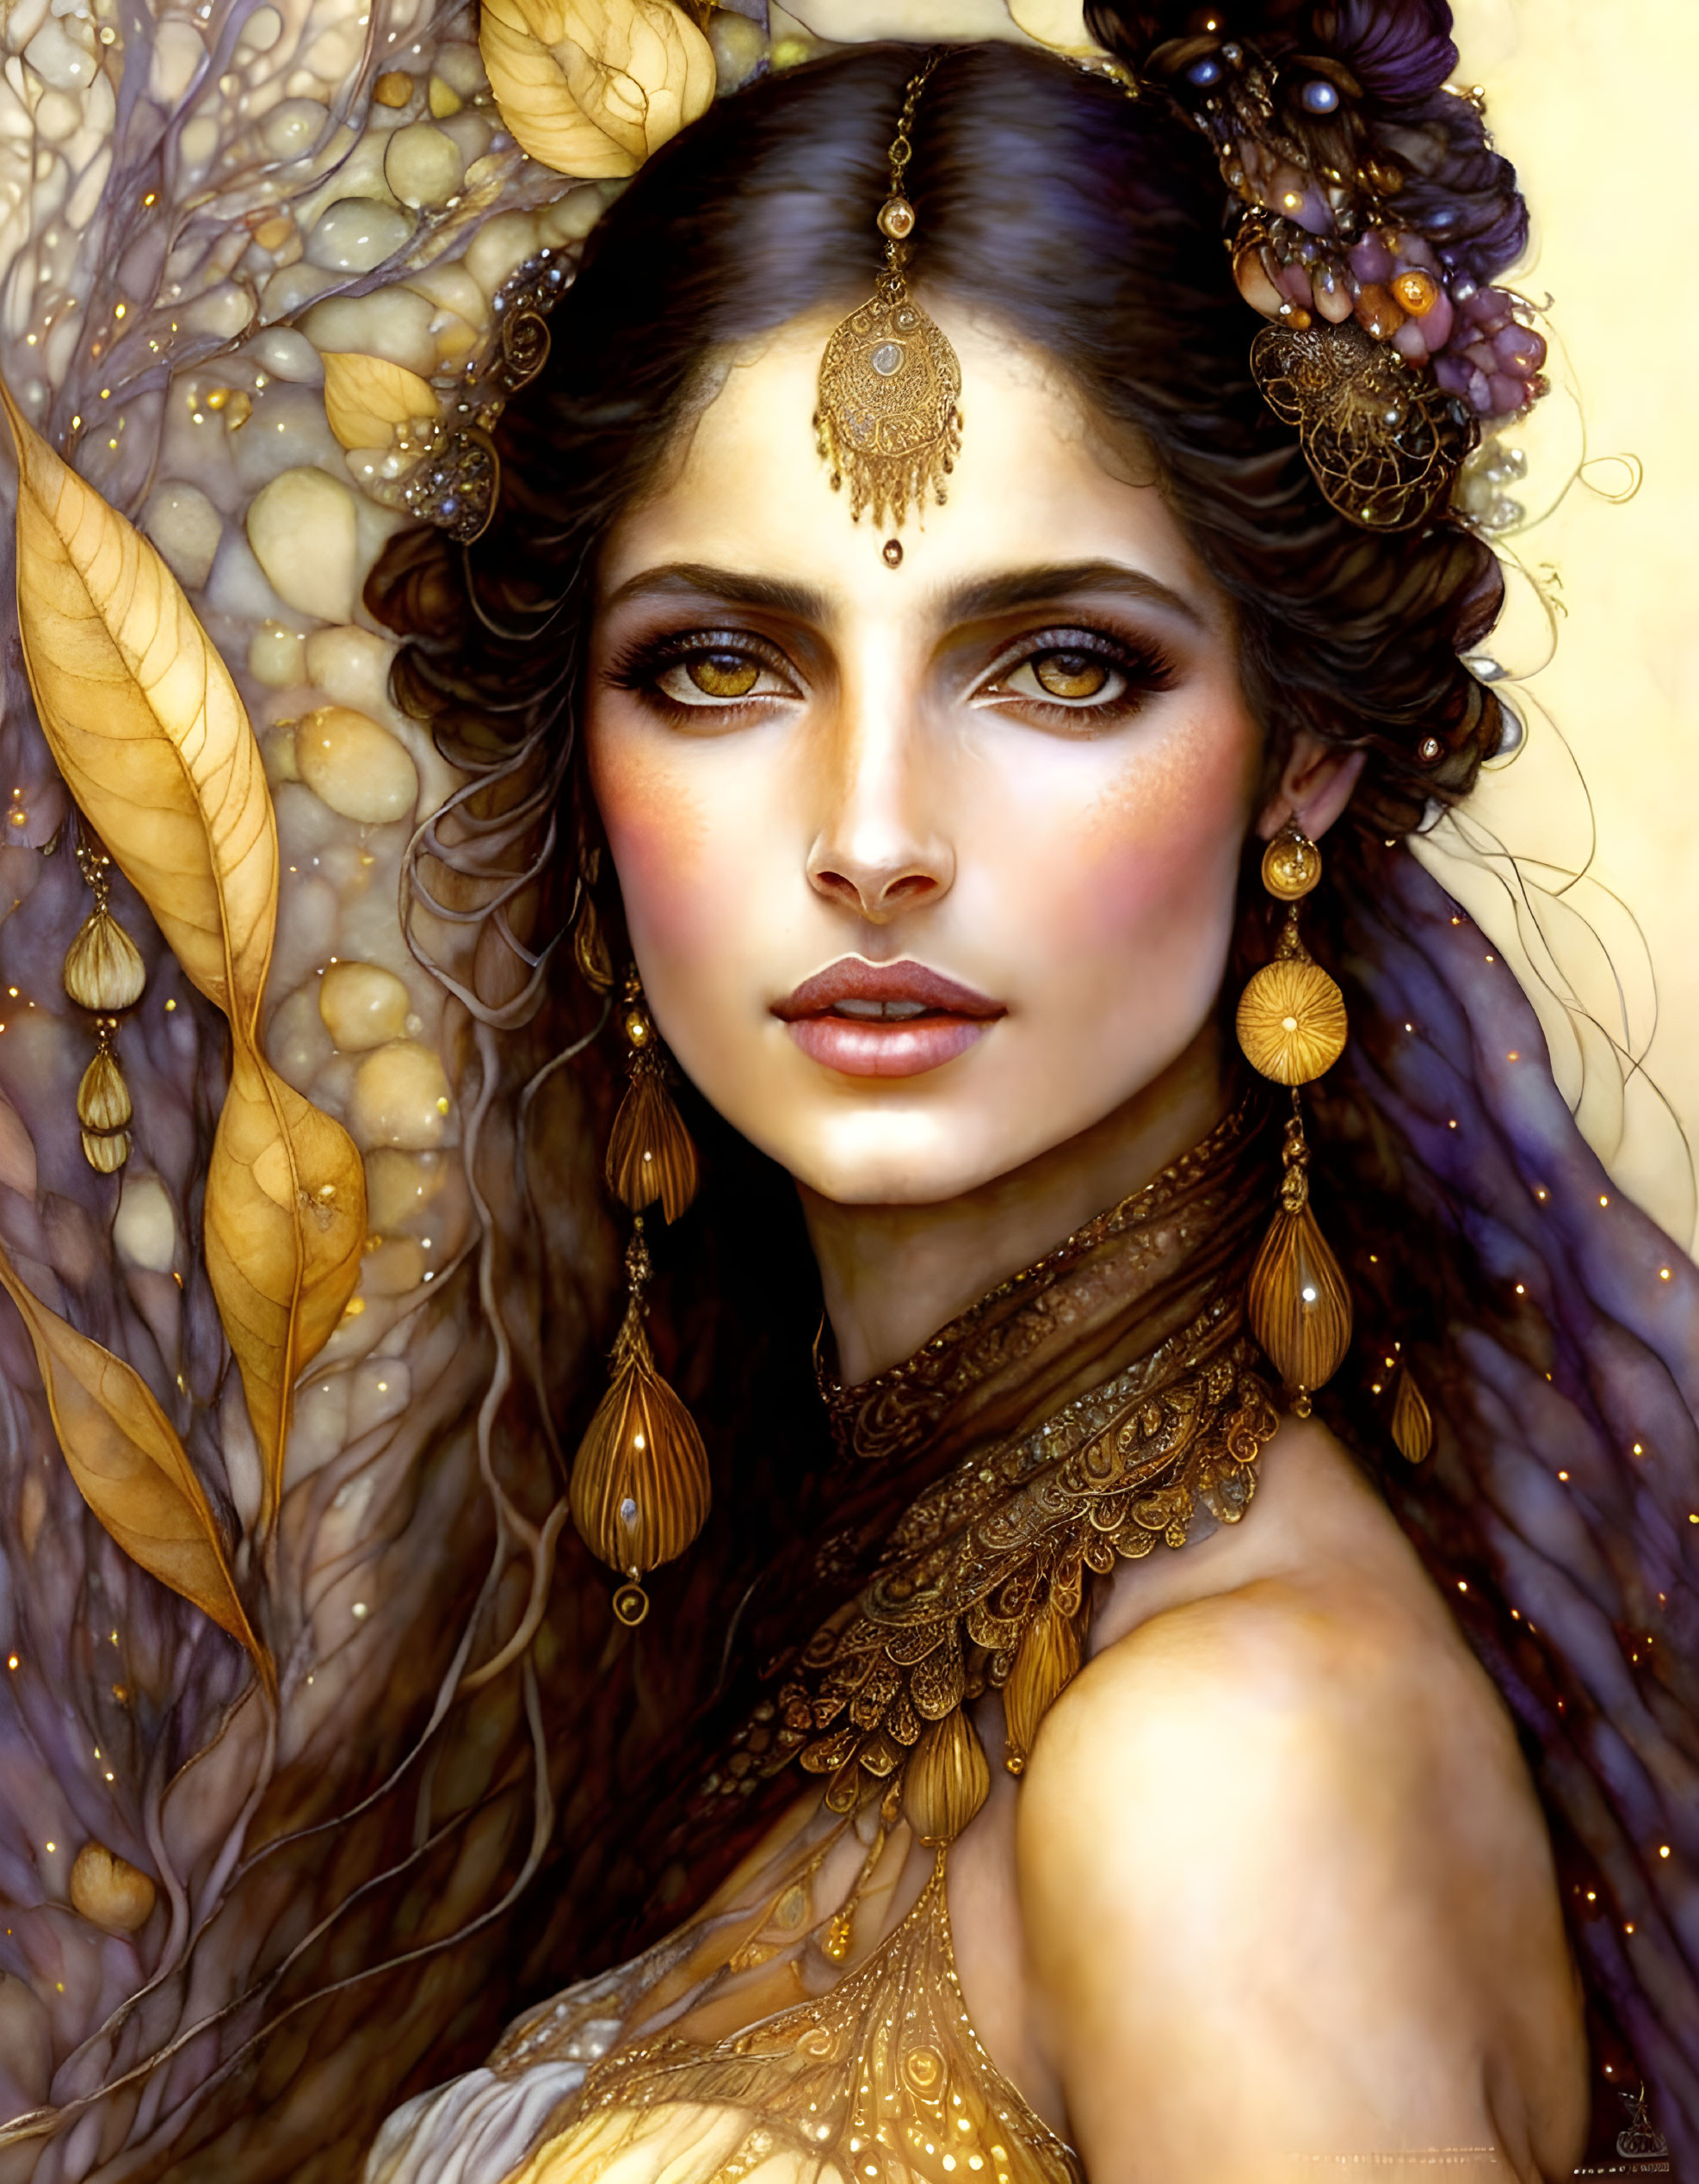 Firefly goddess